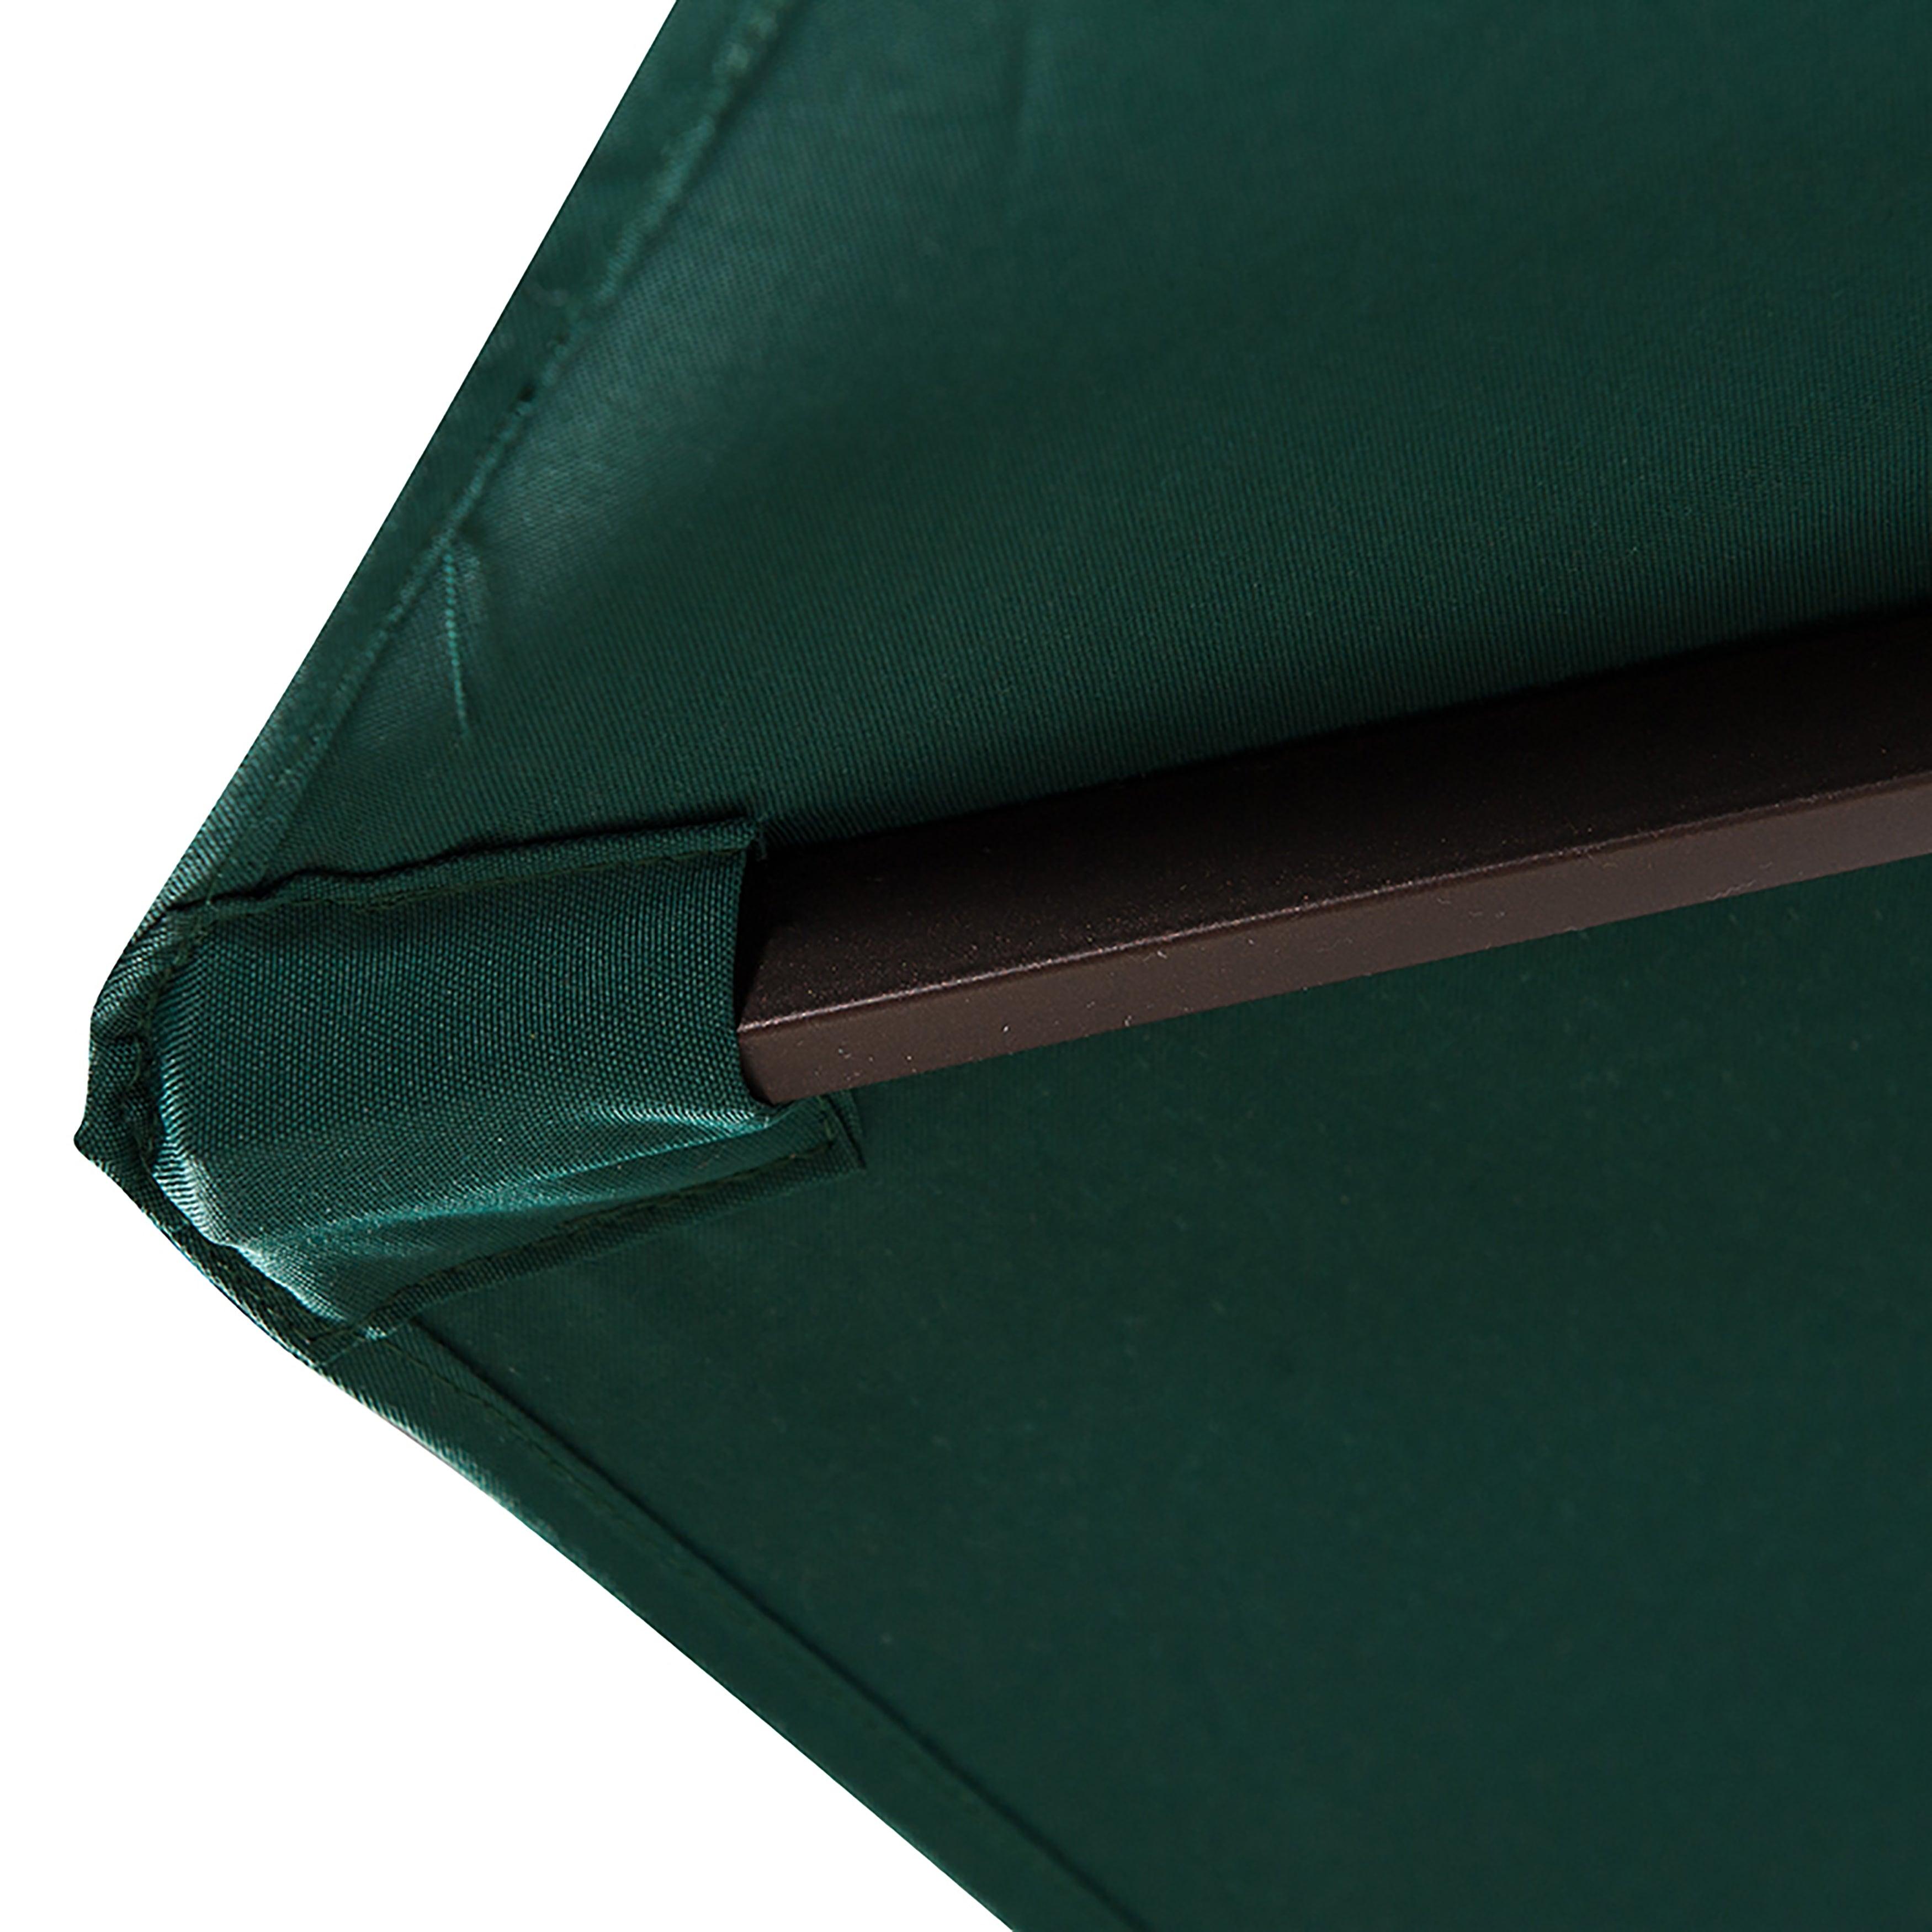 9 Ft Patio Umbrella for Outdoor Shade, Dark Green